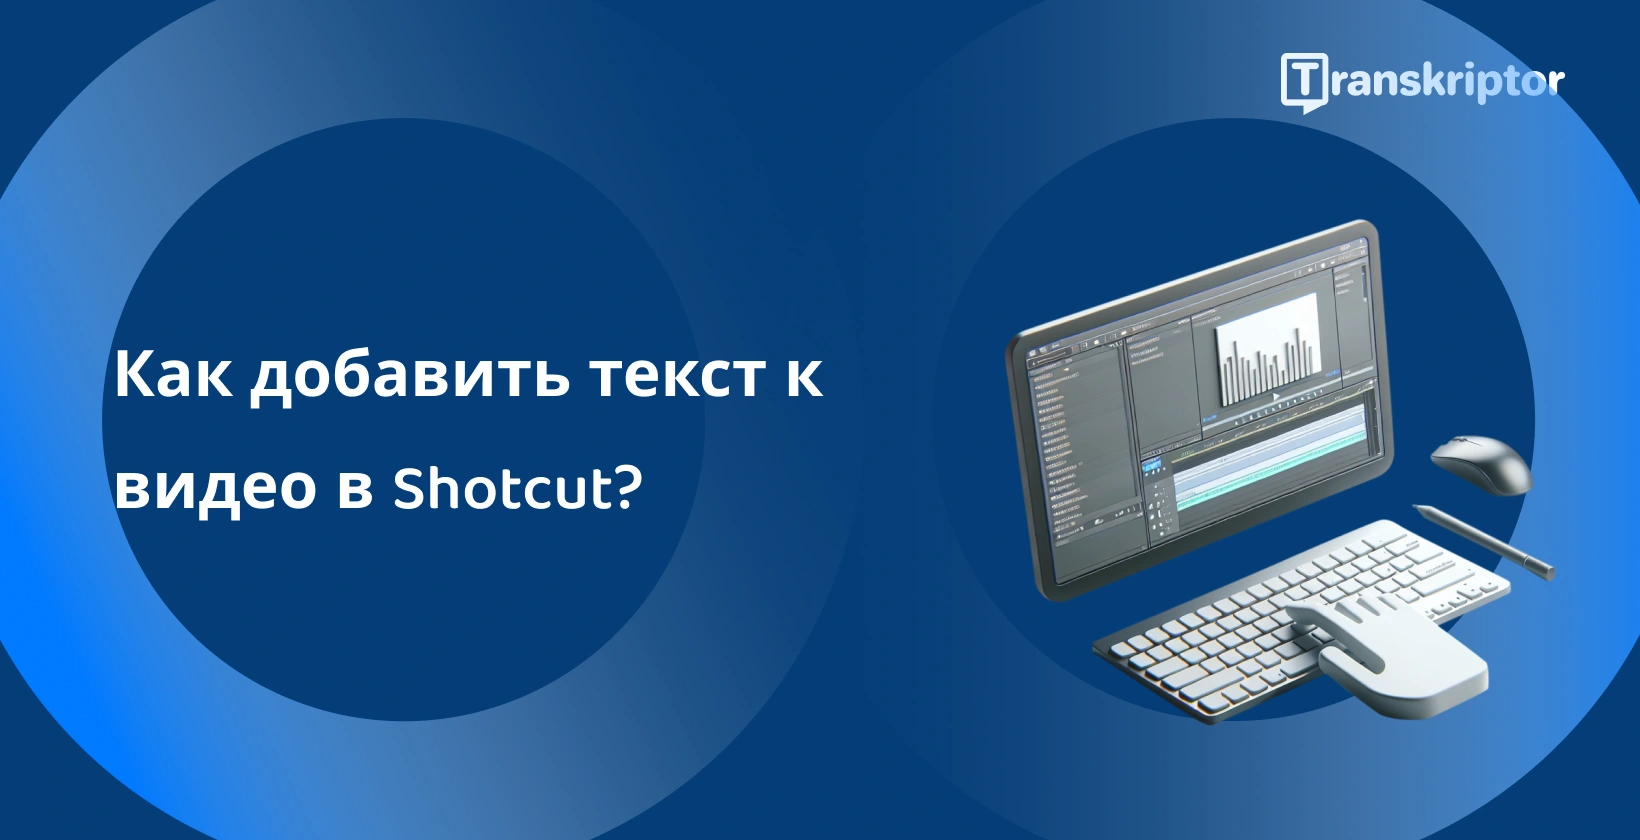 Программное обеспечение для редактирования видео Shotcut на мониторе с инструментами формы волны и текста для добавления субтитров и заголовков к видео.